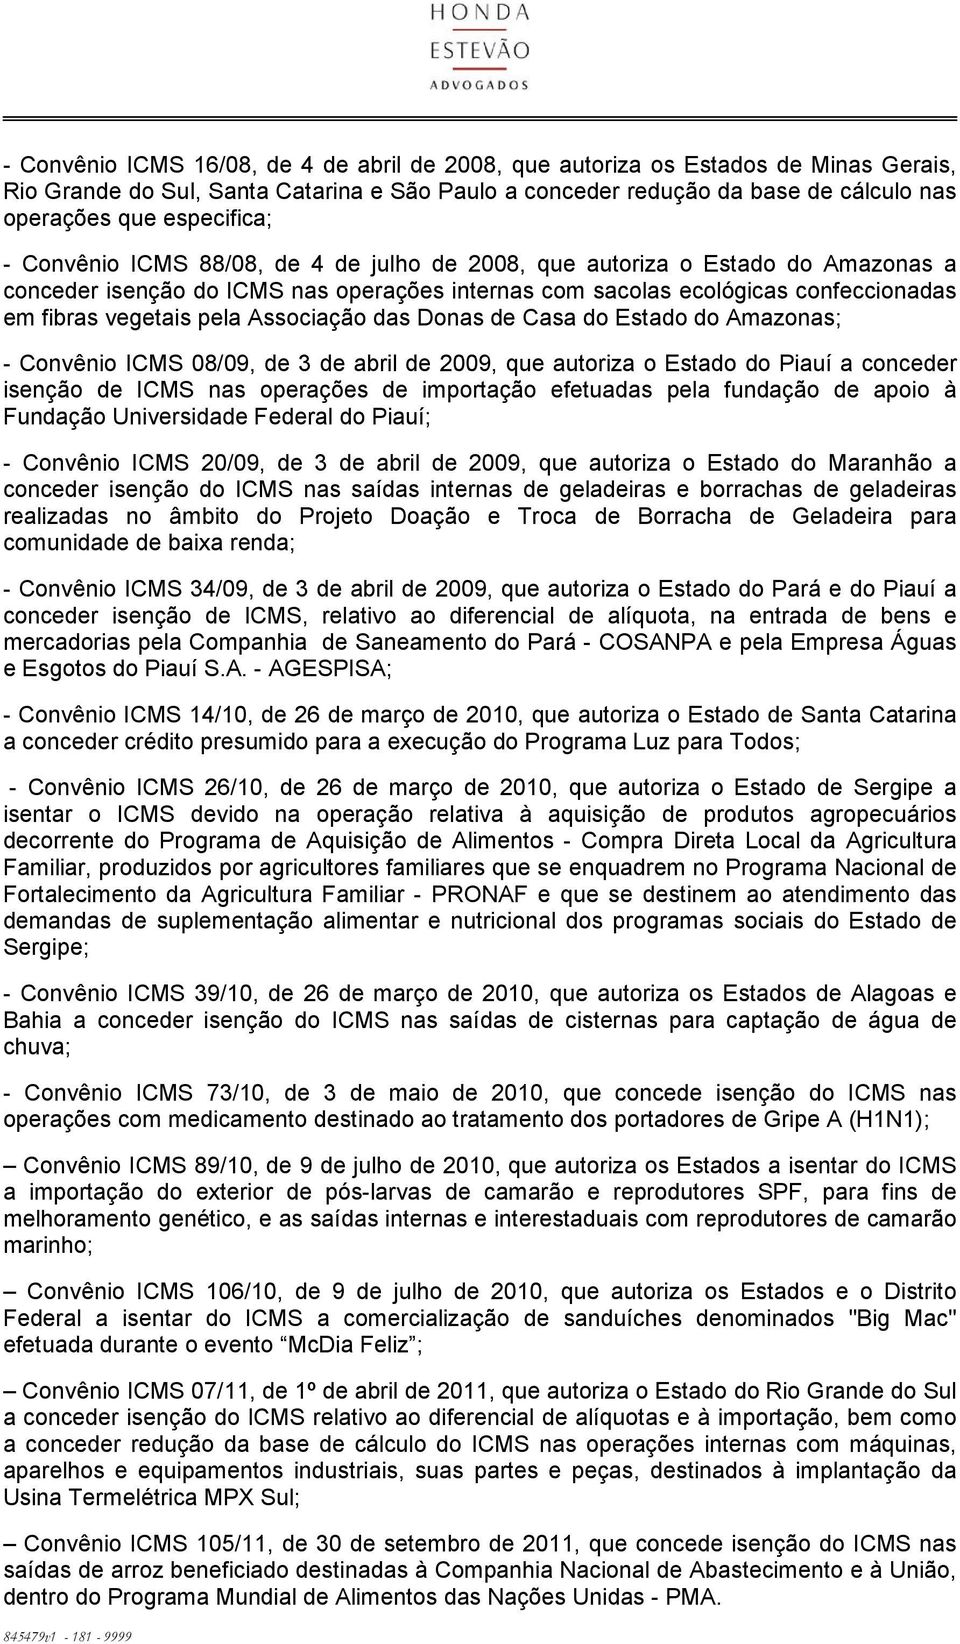 pela Associação das Donas de Casa do Estado do Amazonas; - Convênio ICMS 08/09, de 3 de abril de 2009, que autoriza o Estado do Piauí a conceder isenção de ICMS nas operações de importação efetuadas